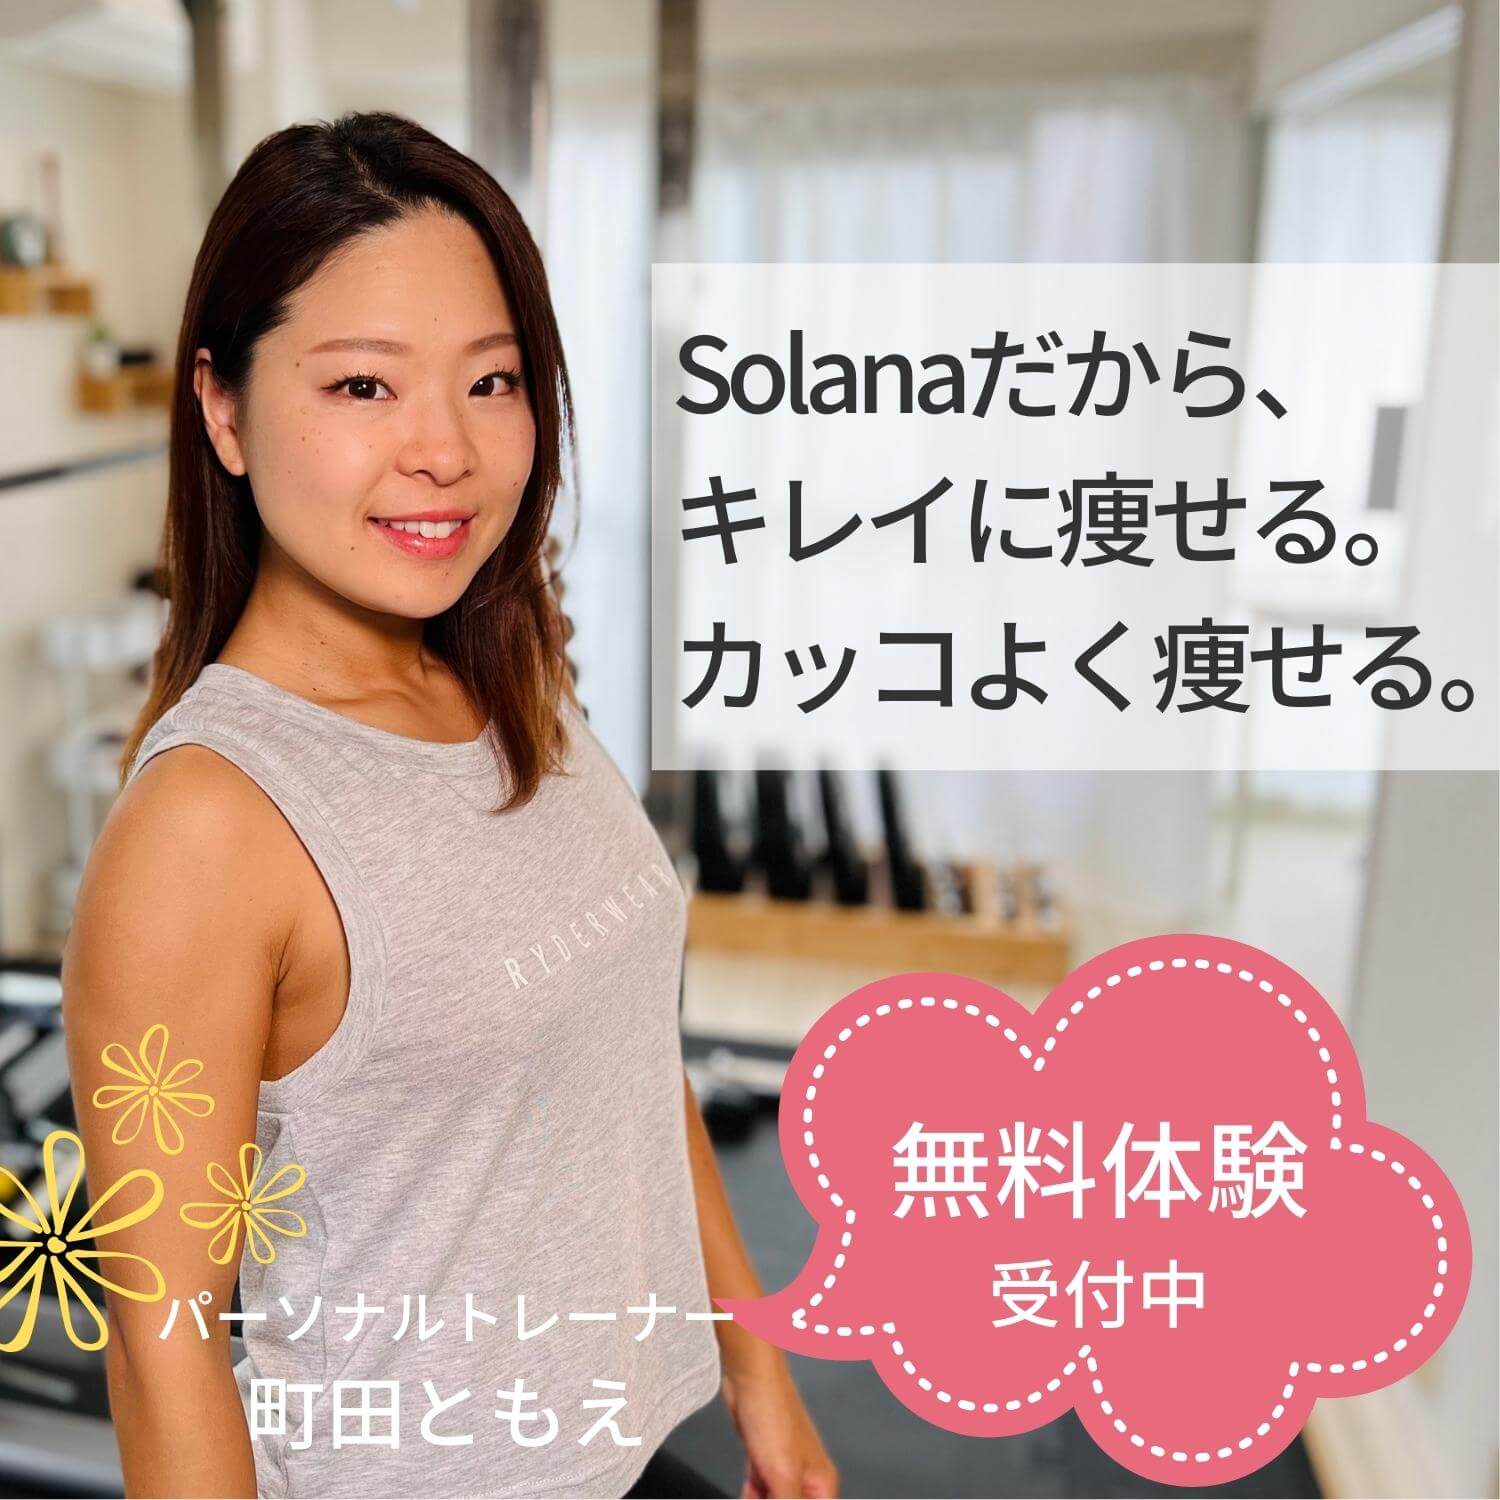 Solanaだから、キレイに痩せる。カッコよく痩せる。無料体験受付中 パーソナルトレーナー町田ともえ